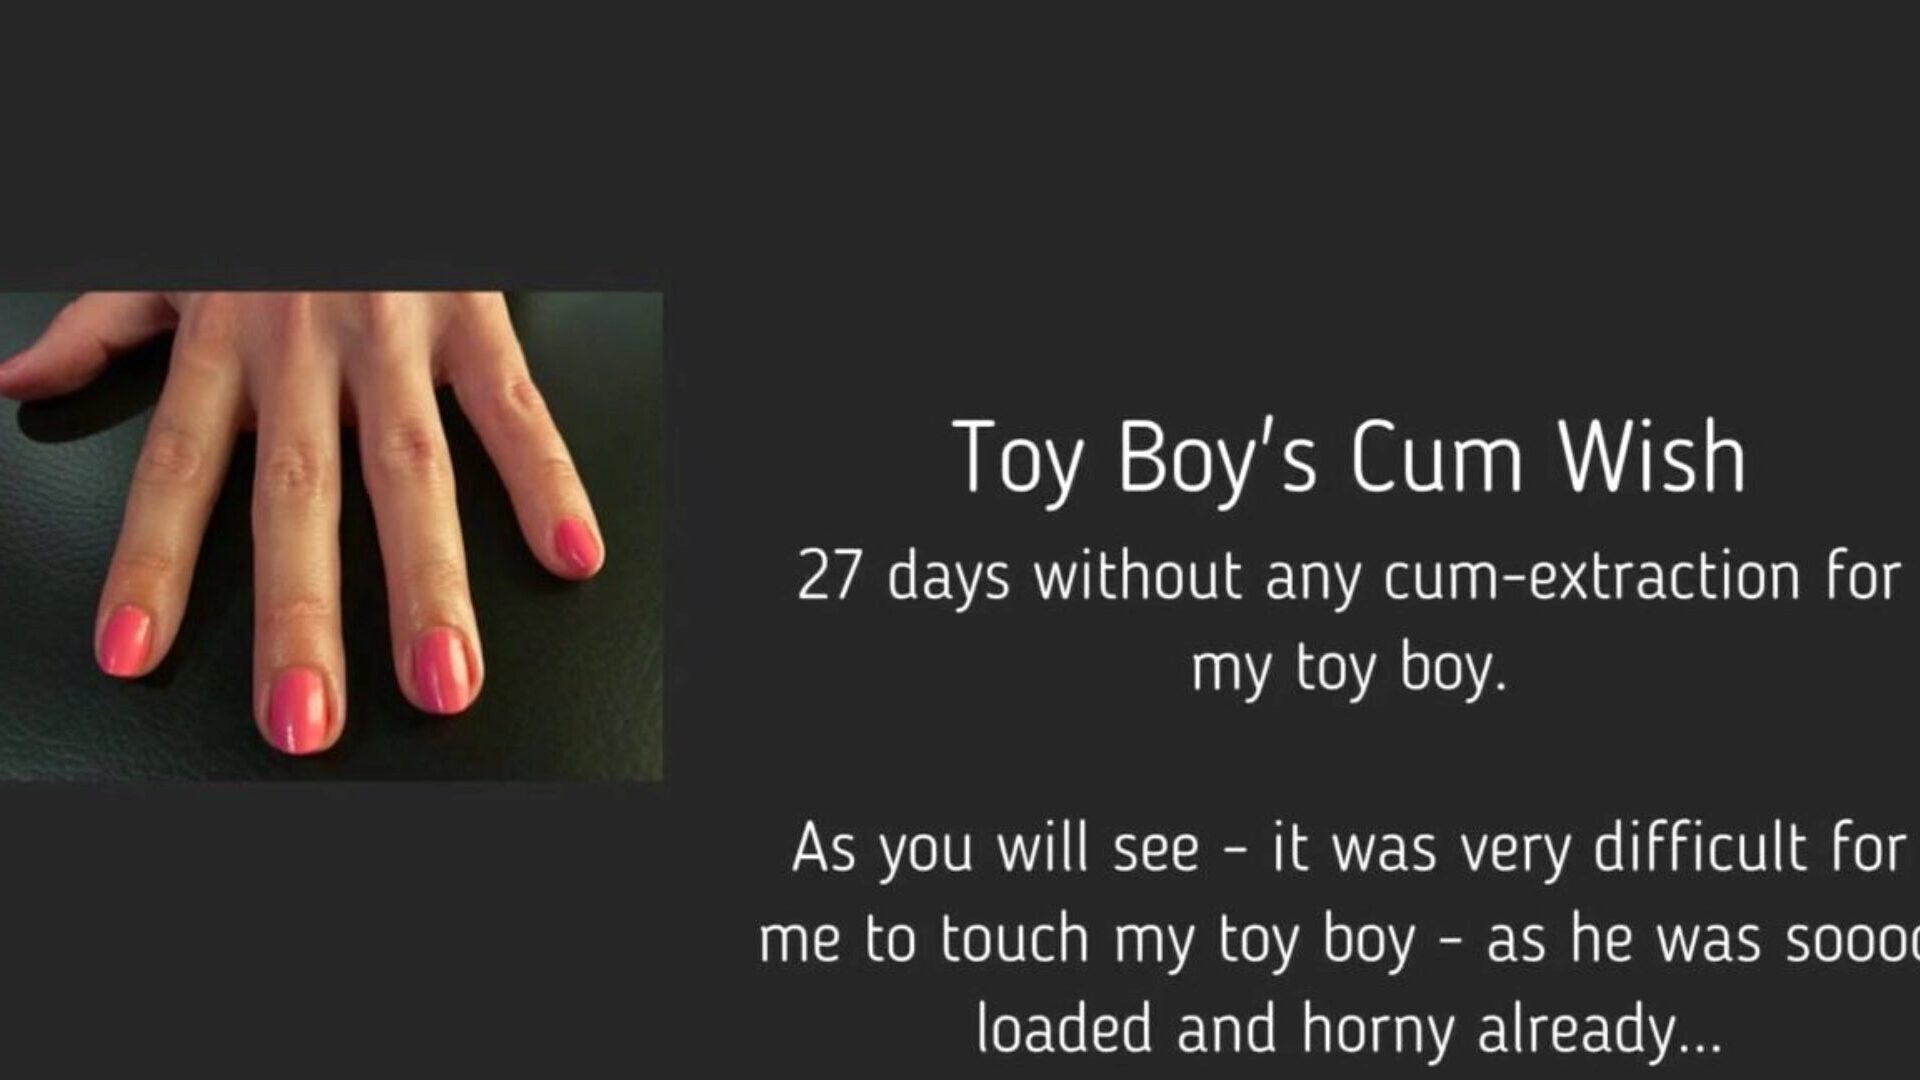 toy boy's cum wish: free femdom handjob hd porn video 95 watch toy boy cum wish tube orgy movie ingyen a xhamsteren, a legszexisebb domina kézimunka bel ami cum & tube fiú hd pornó film jelenetek koncertjeivel